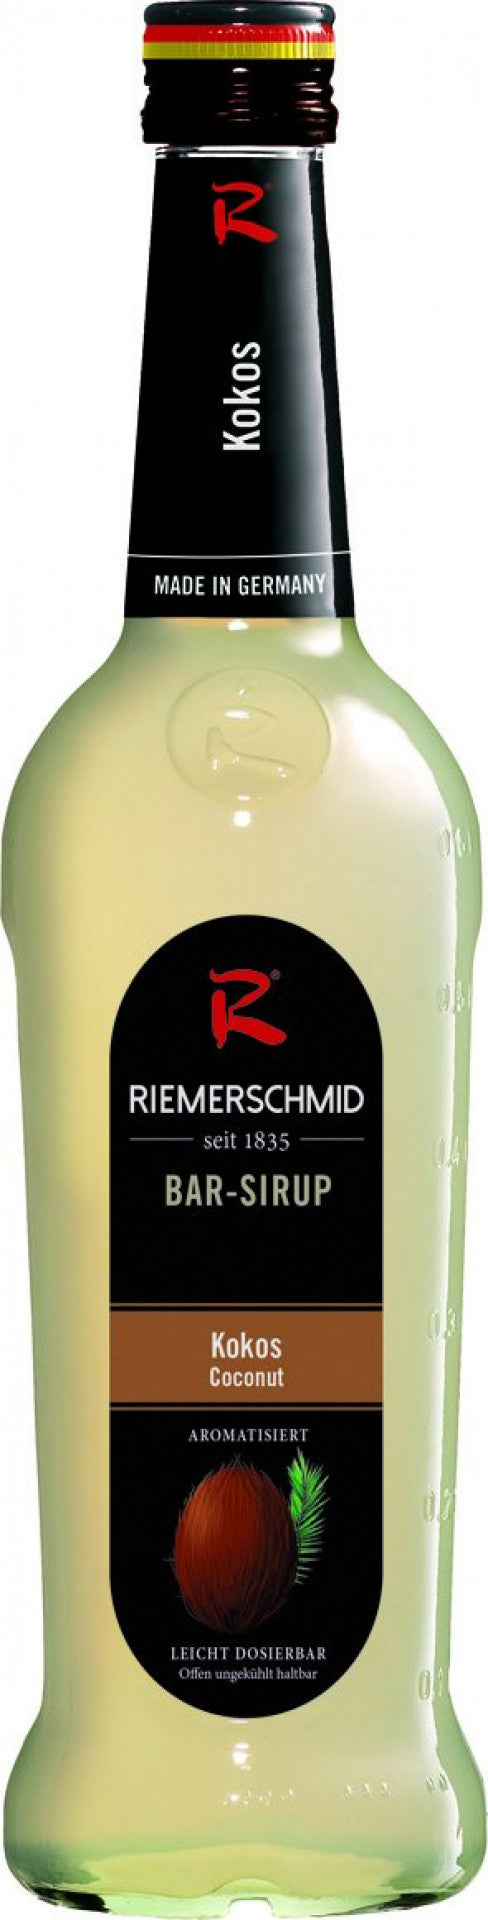 Riemerschmid Bar-Sirup Kokos Geschmack 0,7L